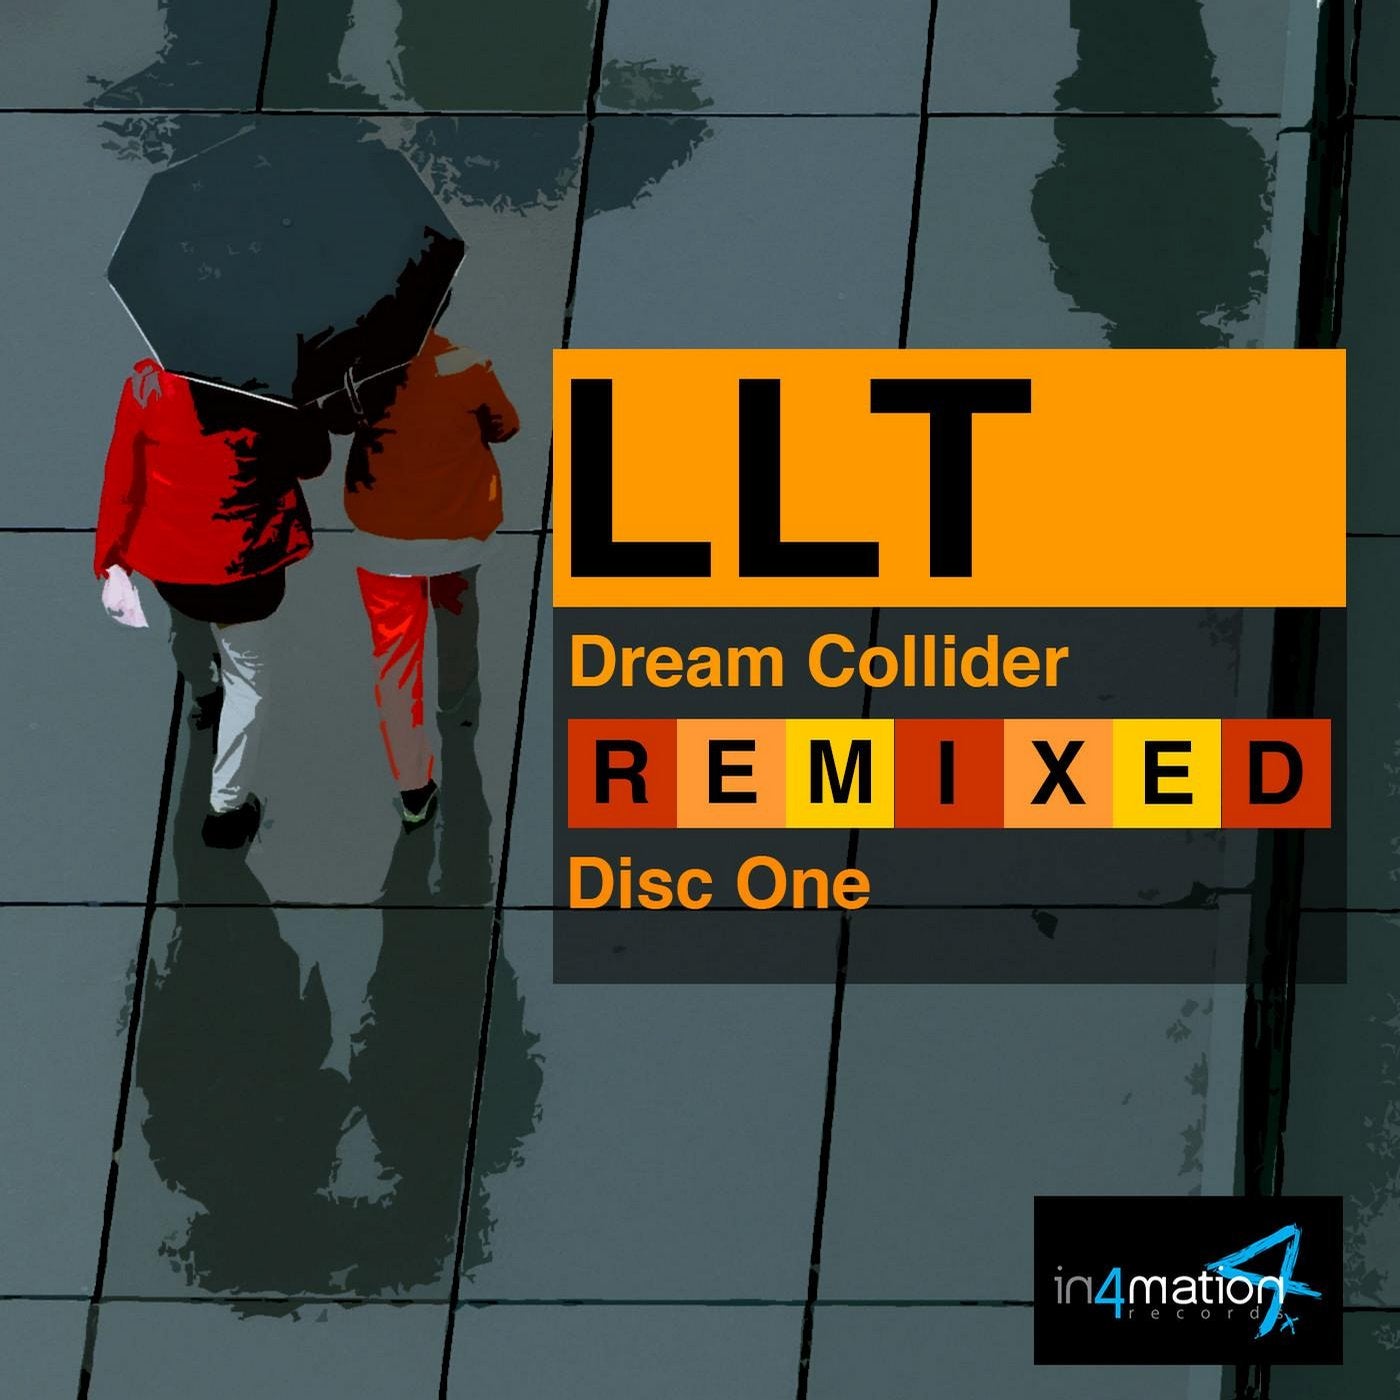 LLT Dream Collider Remixed Disc One